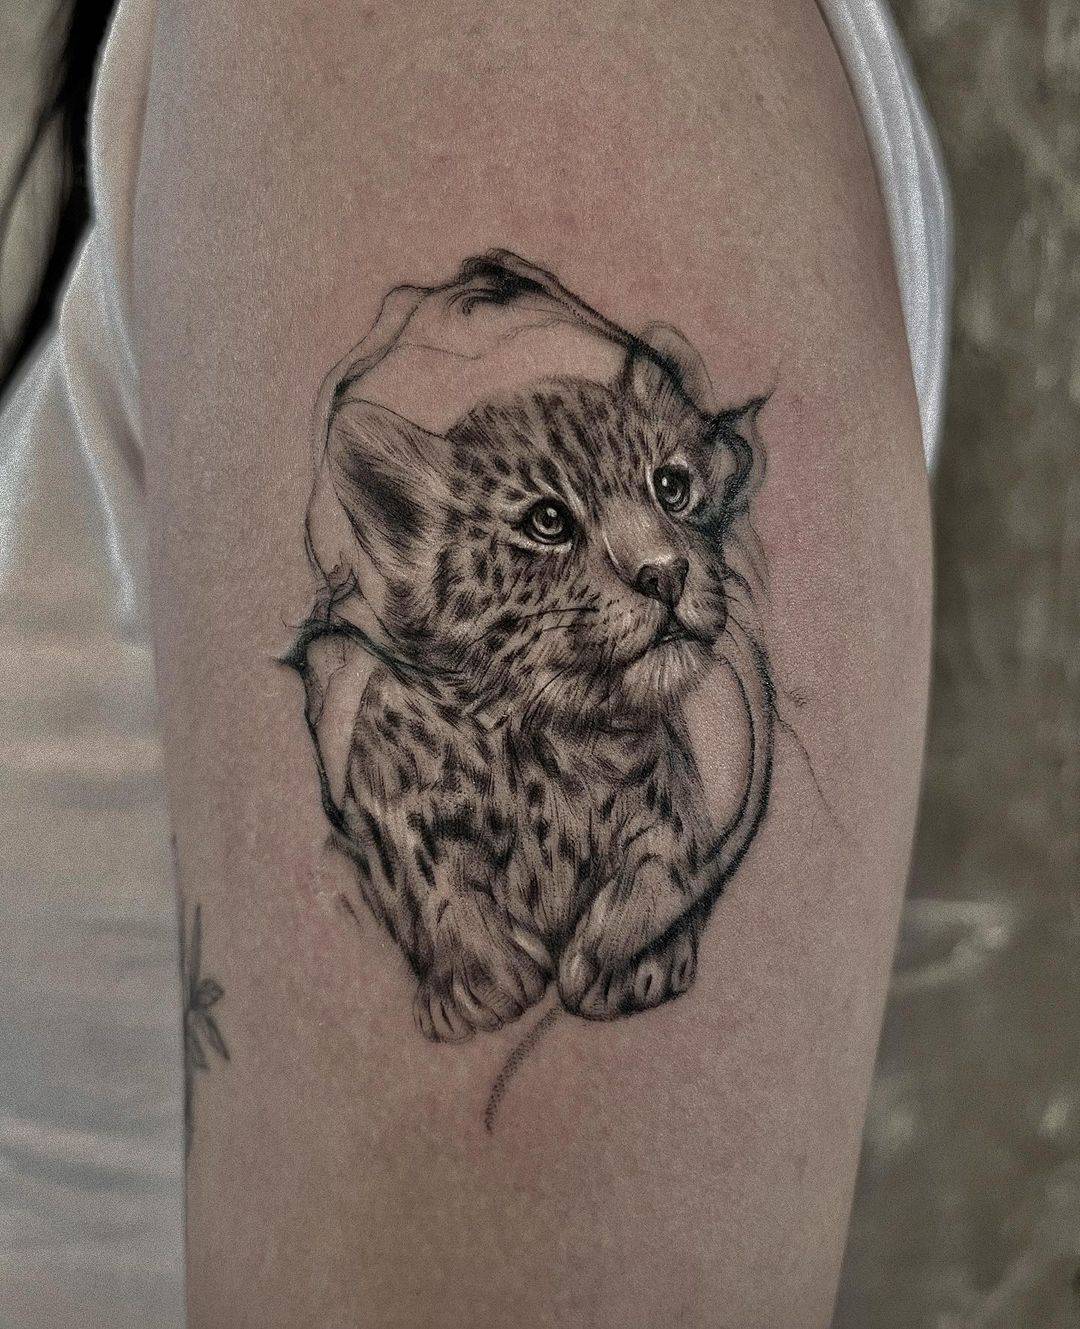 Cute small leoopard tattoo by pov tattoo